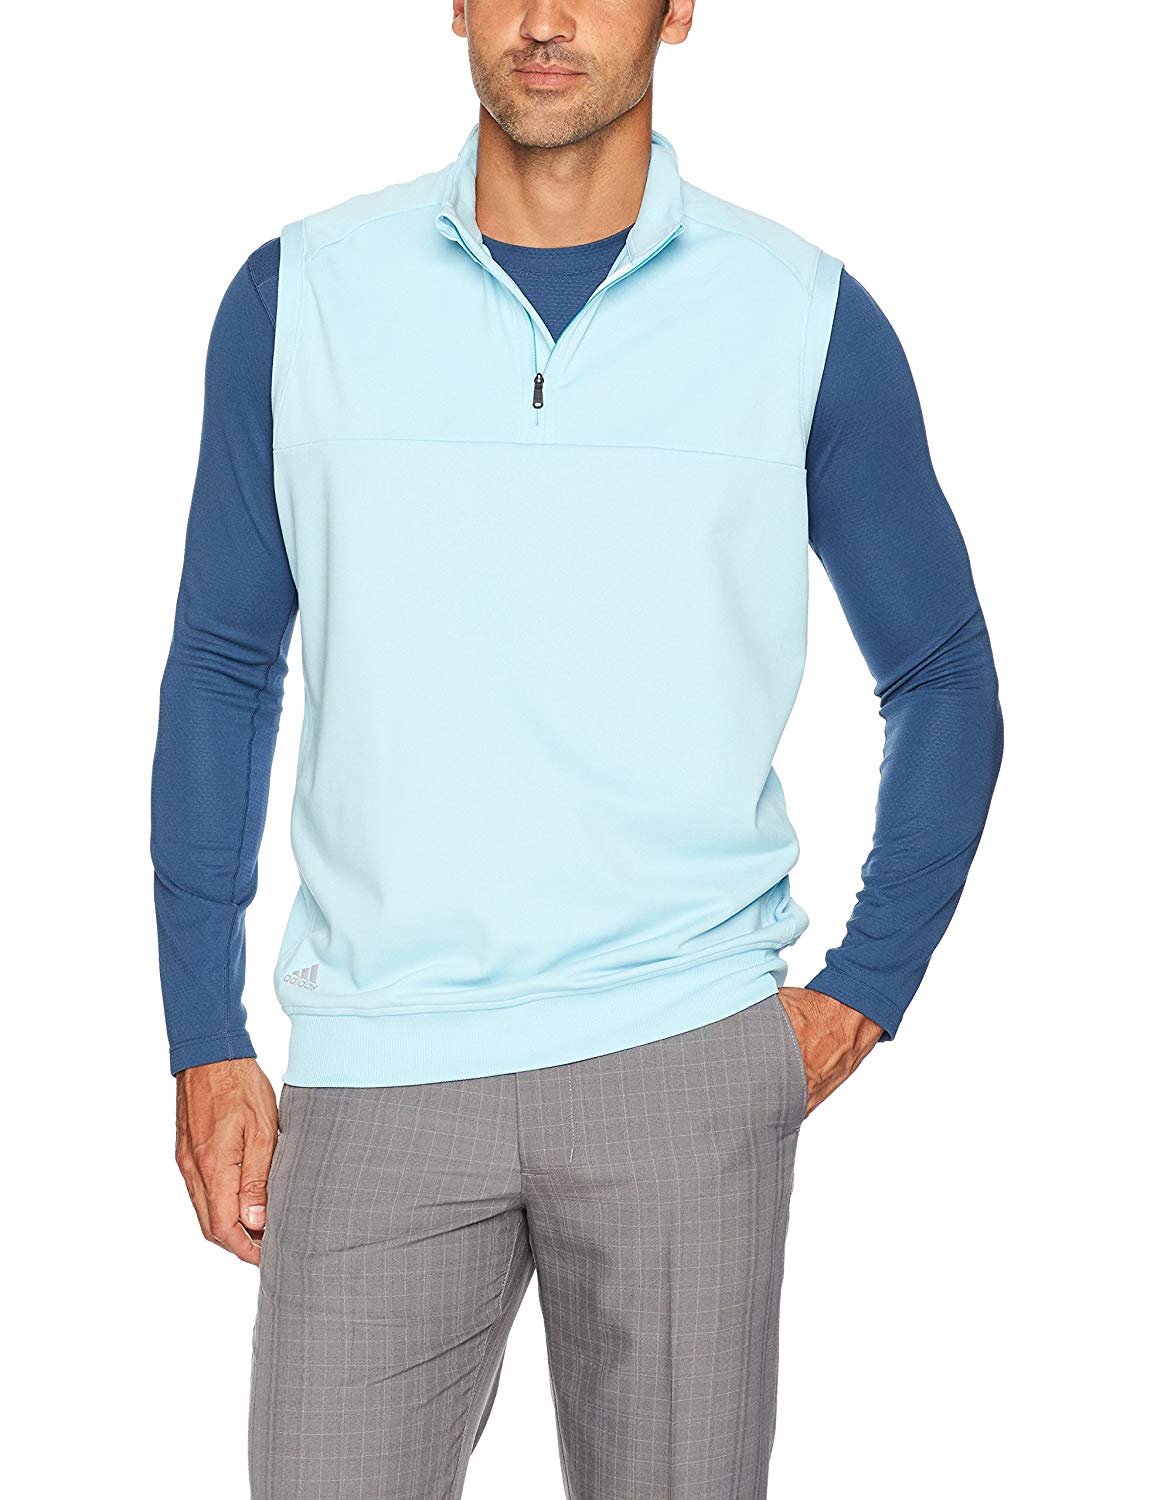 Adidas Mens Club Quarter Zip Golf Vests